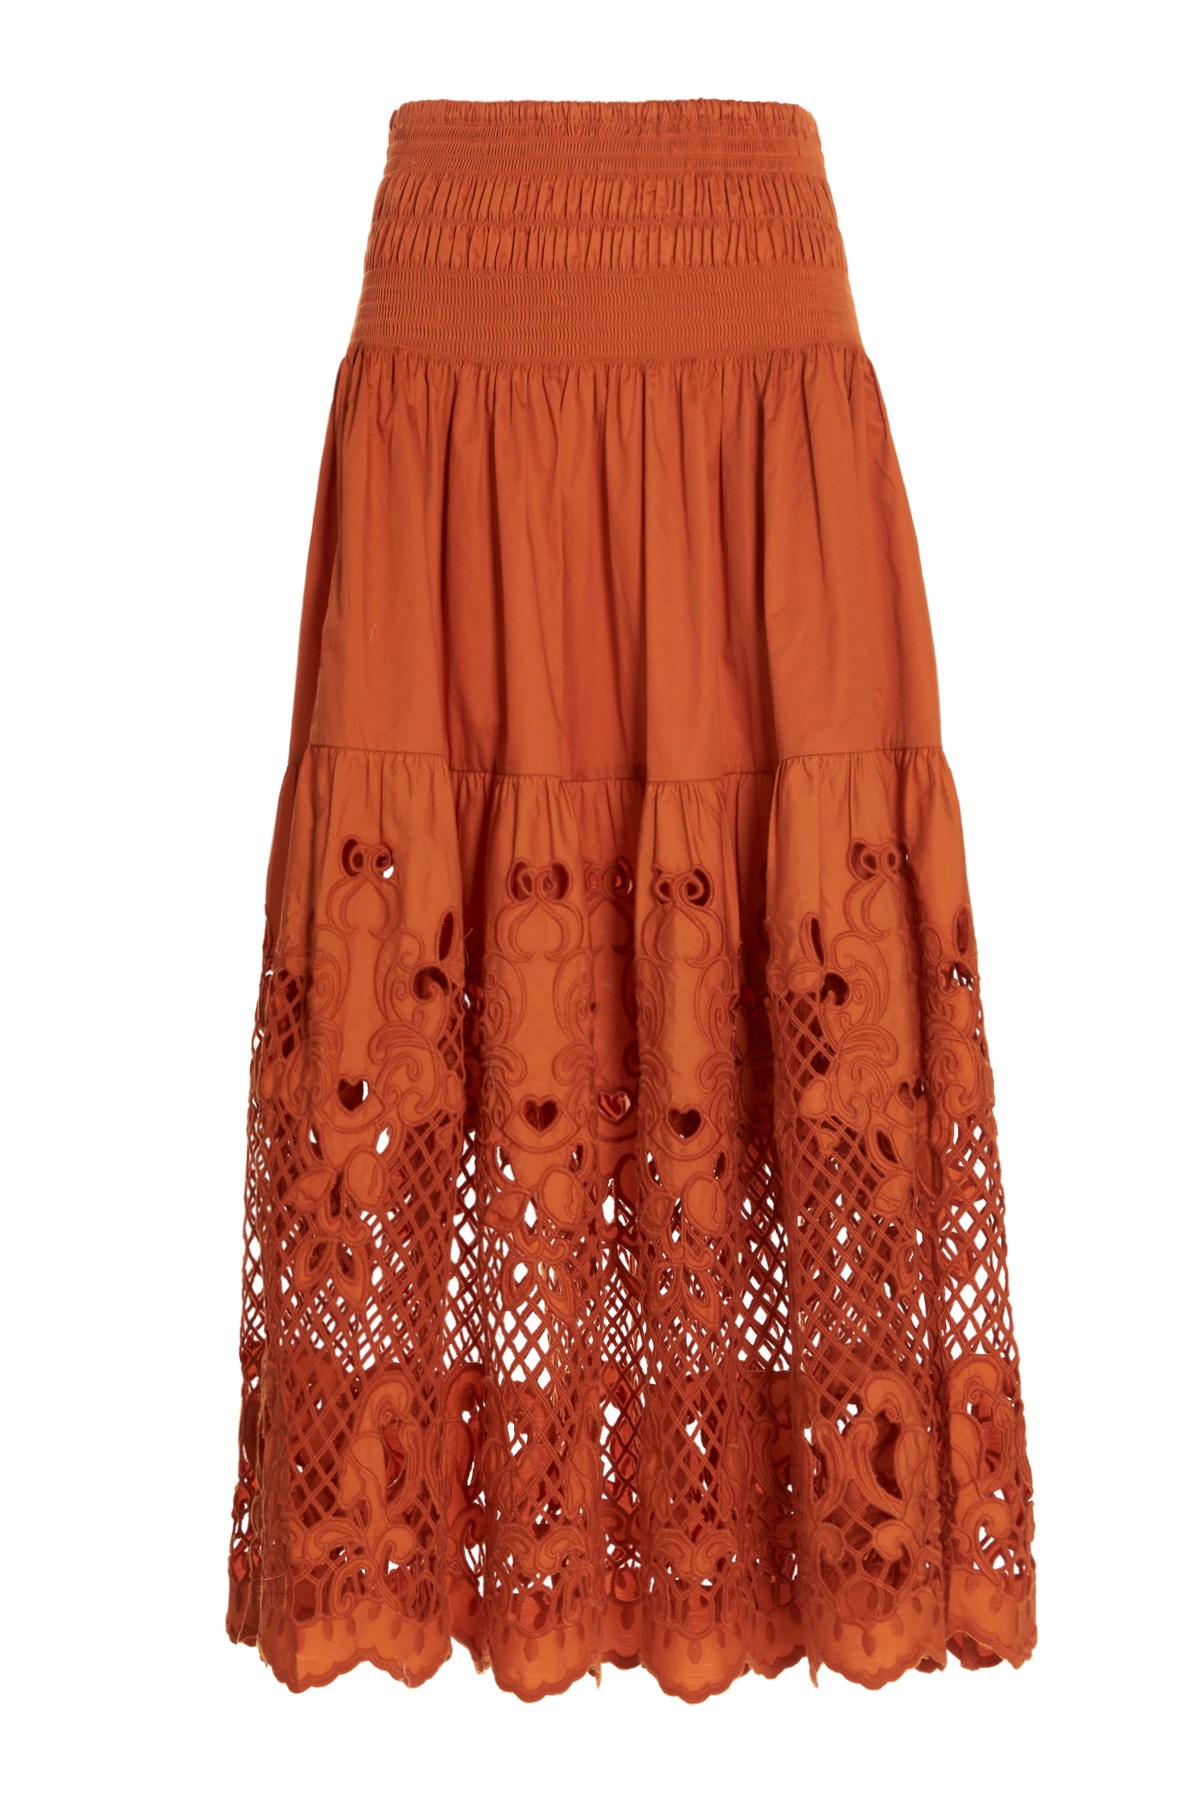 SELF PORTRAIT Maxi Lace Skirt